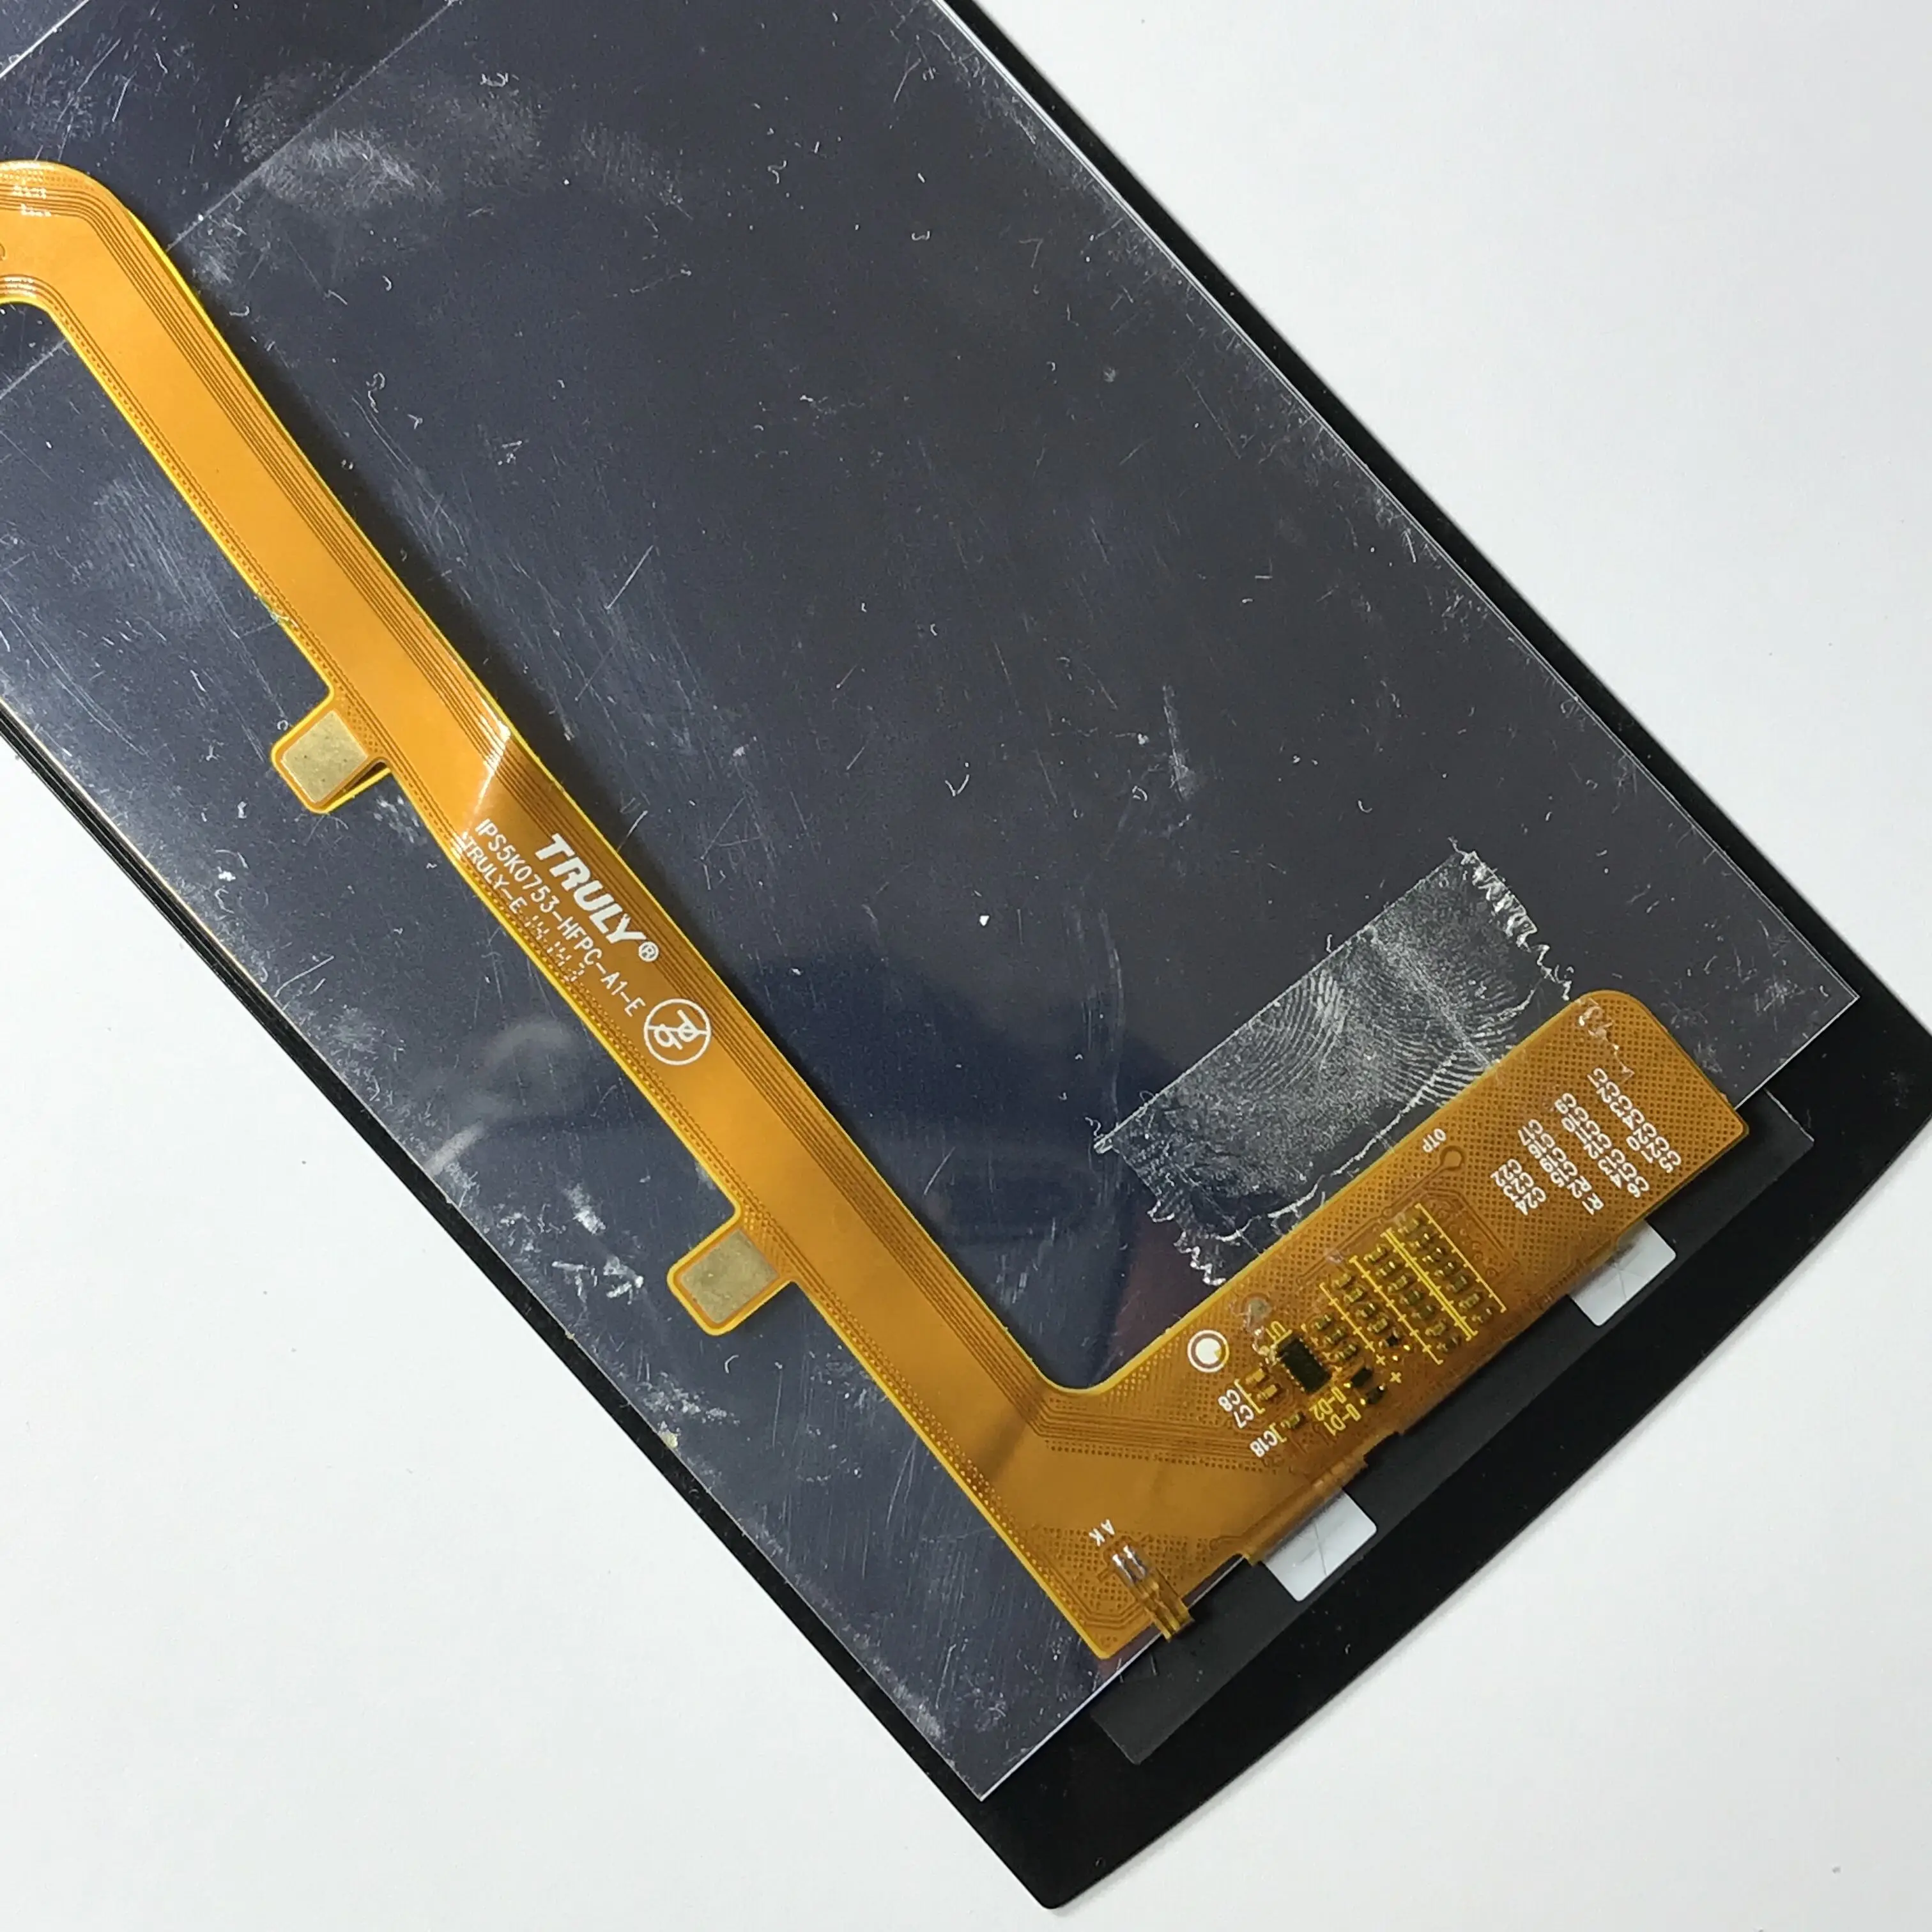 ЖК-дисплей S398 для Philips Xenium и сенсорный экран в сборе сменная деталь черный цвет